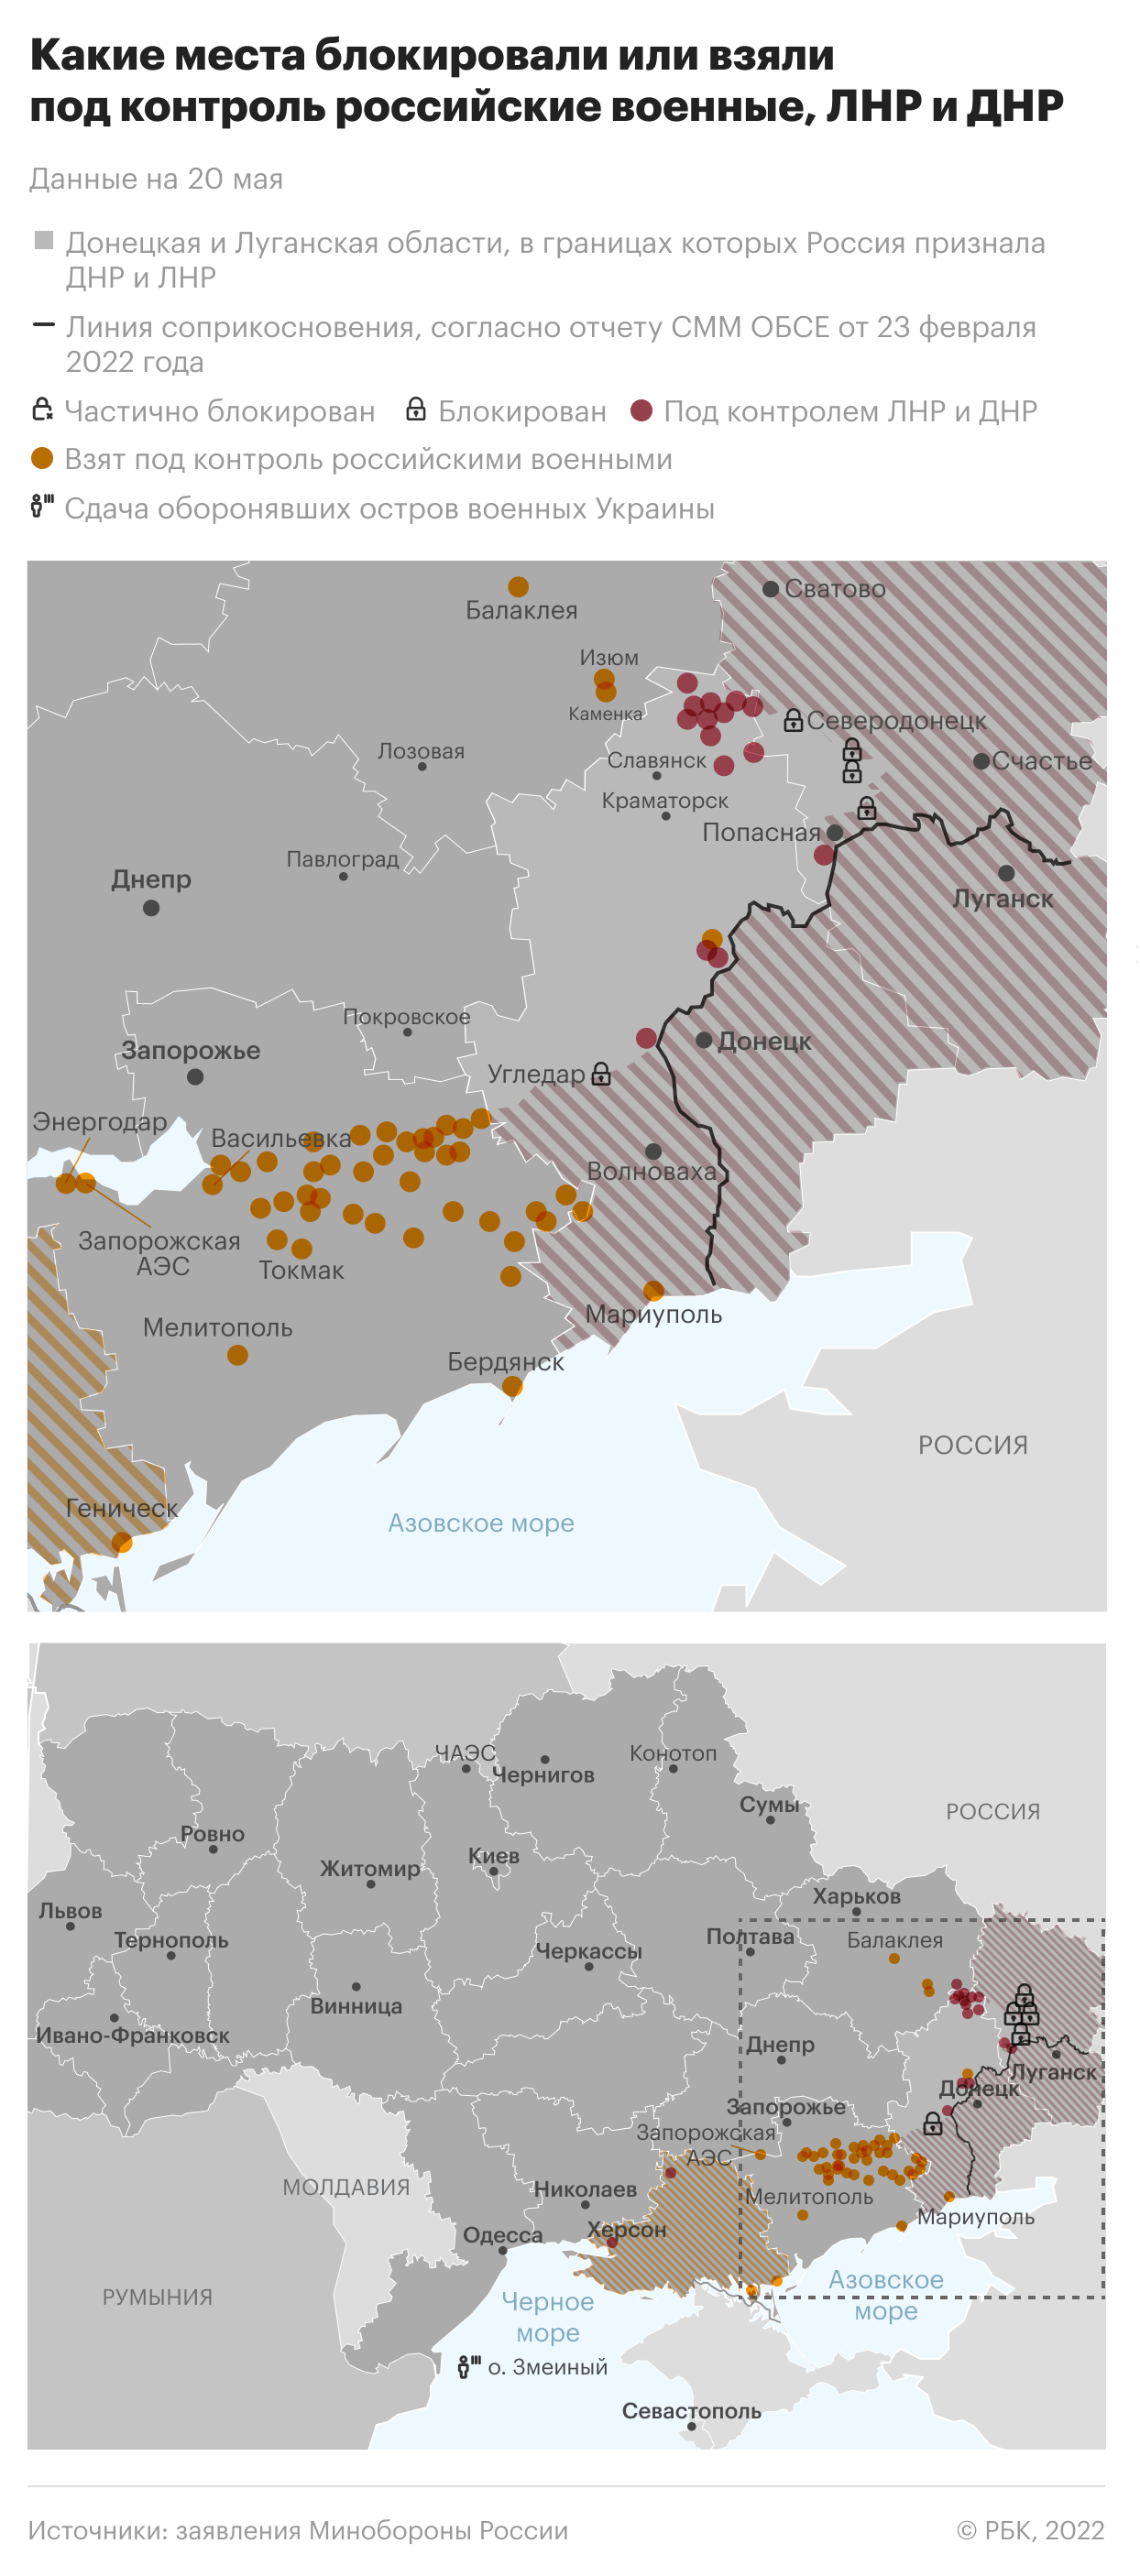 Минобороны России заявило об 11 сбитых украинских беспилотниках"/>













